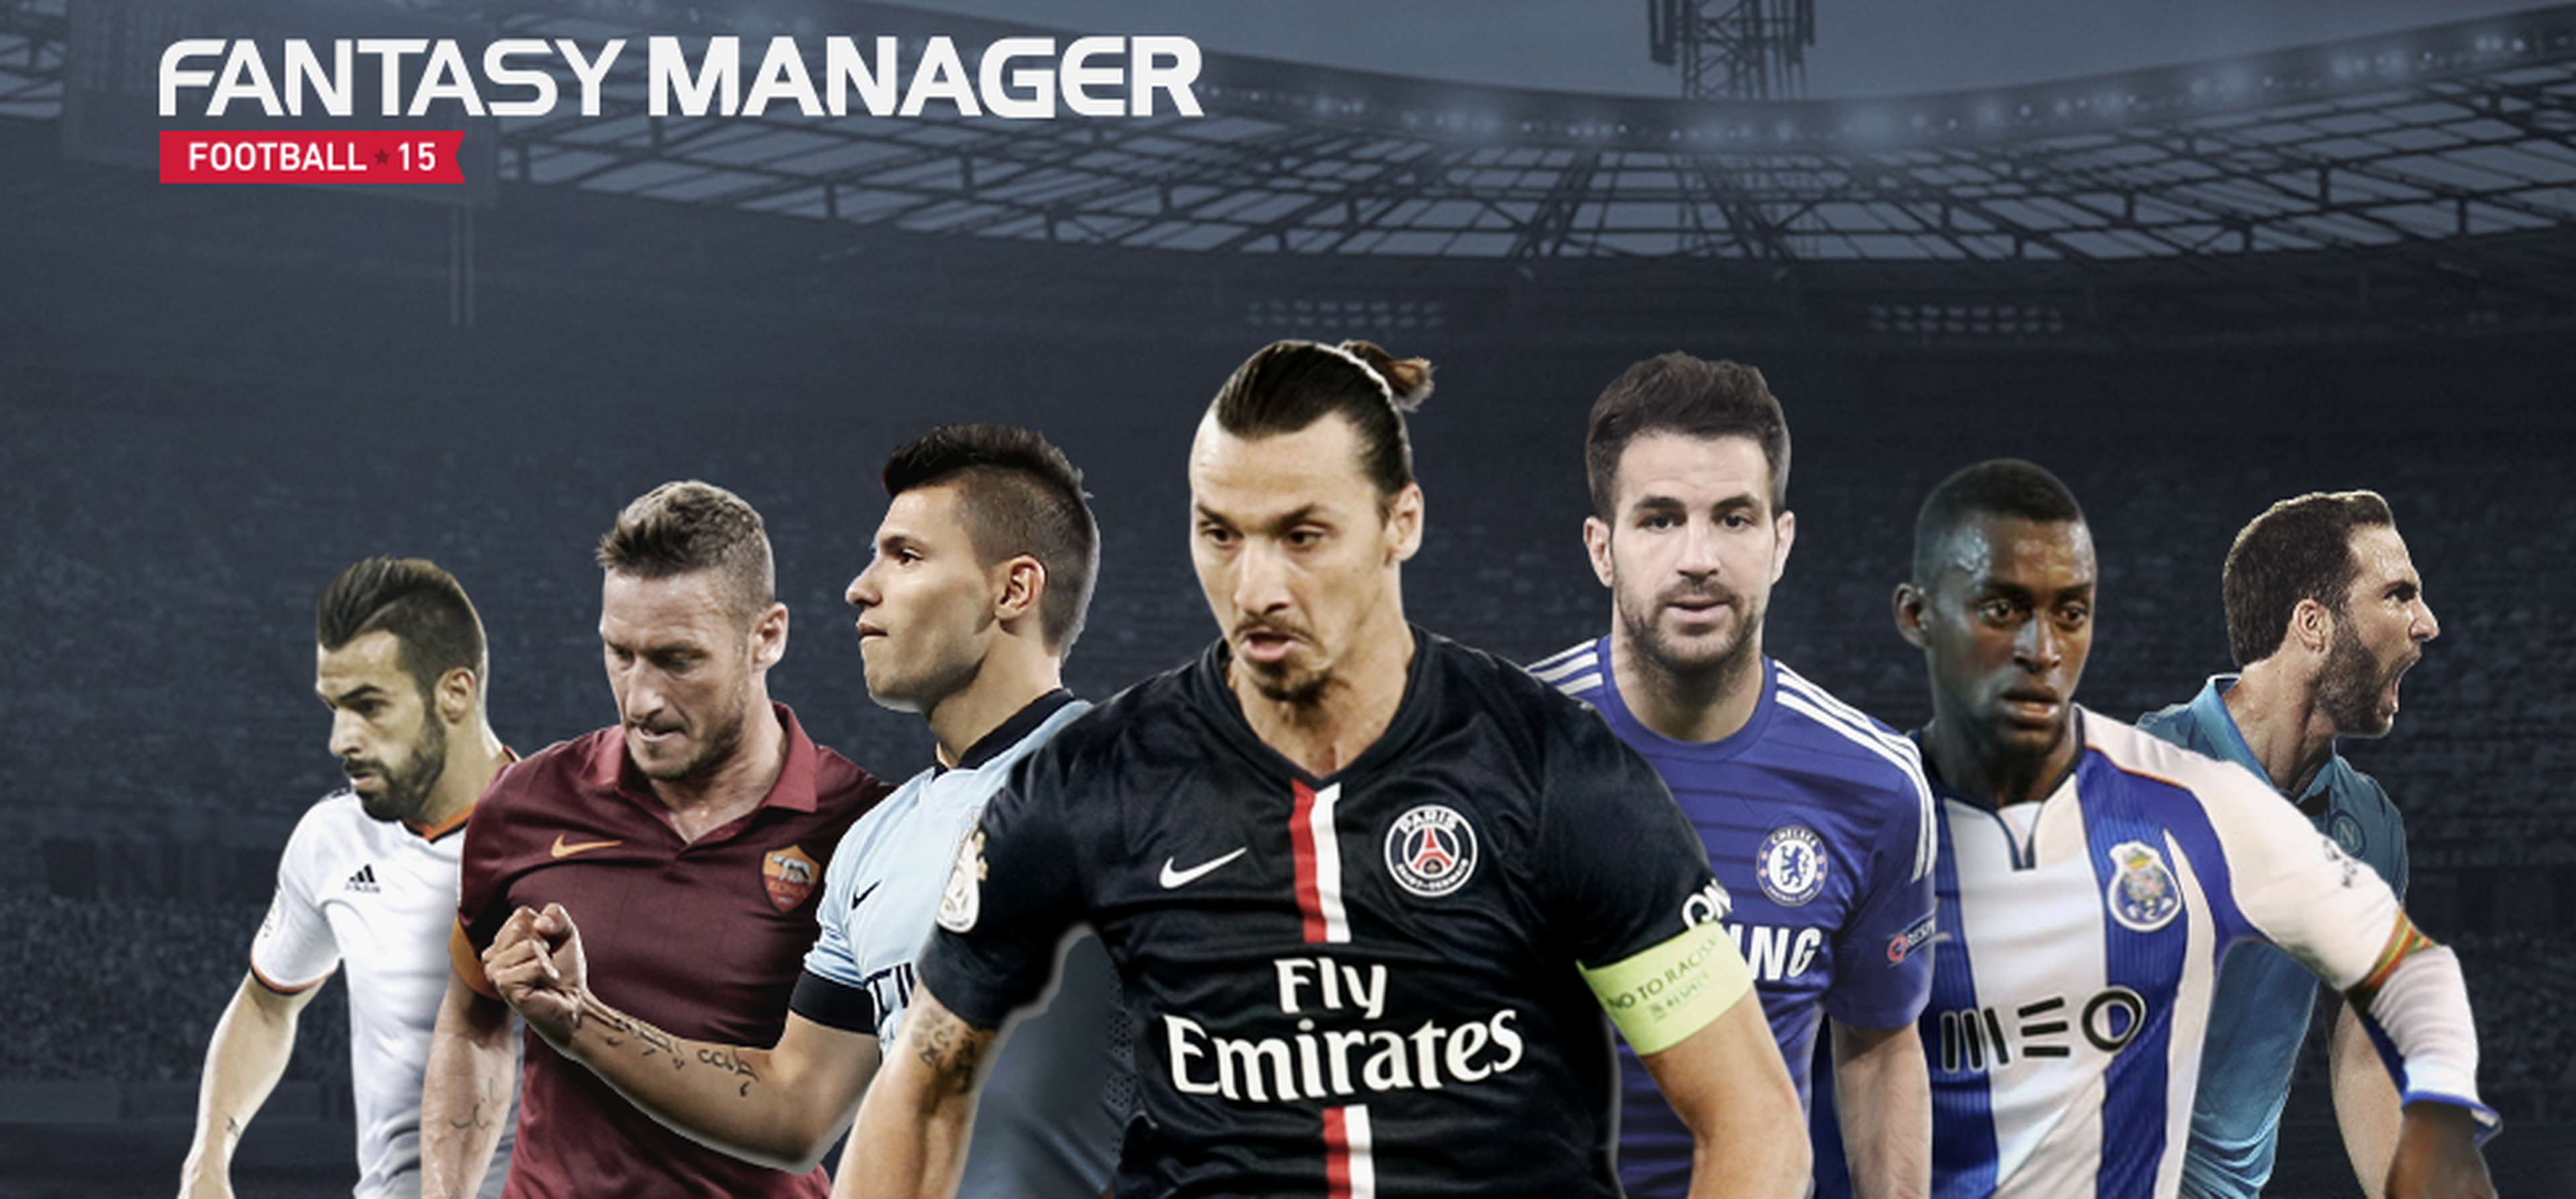 Fantasy Manager Football 2015 ¡consigue premios exclusivos!